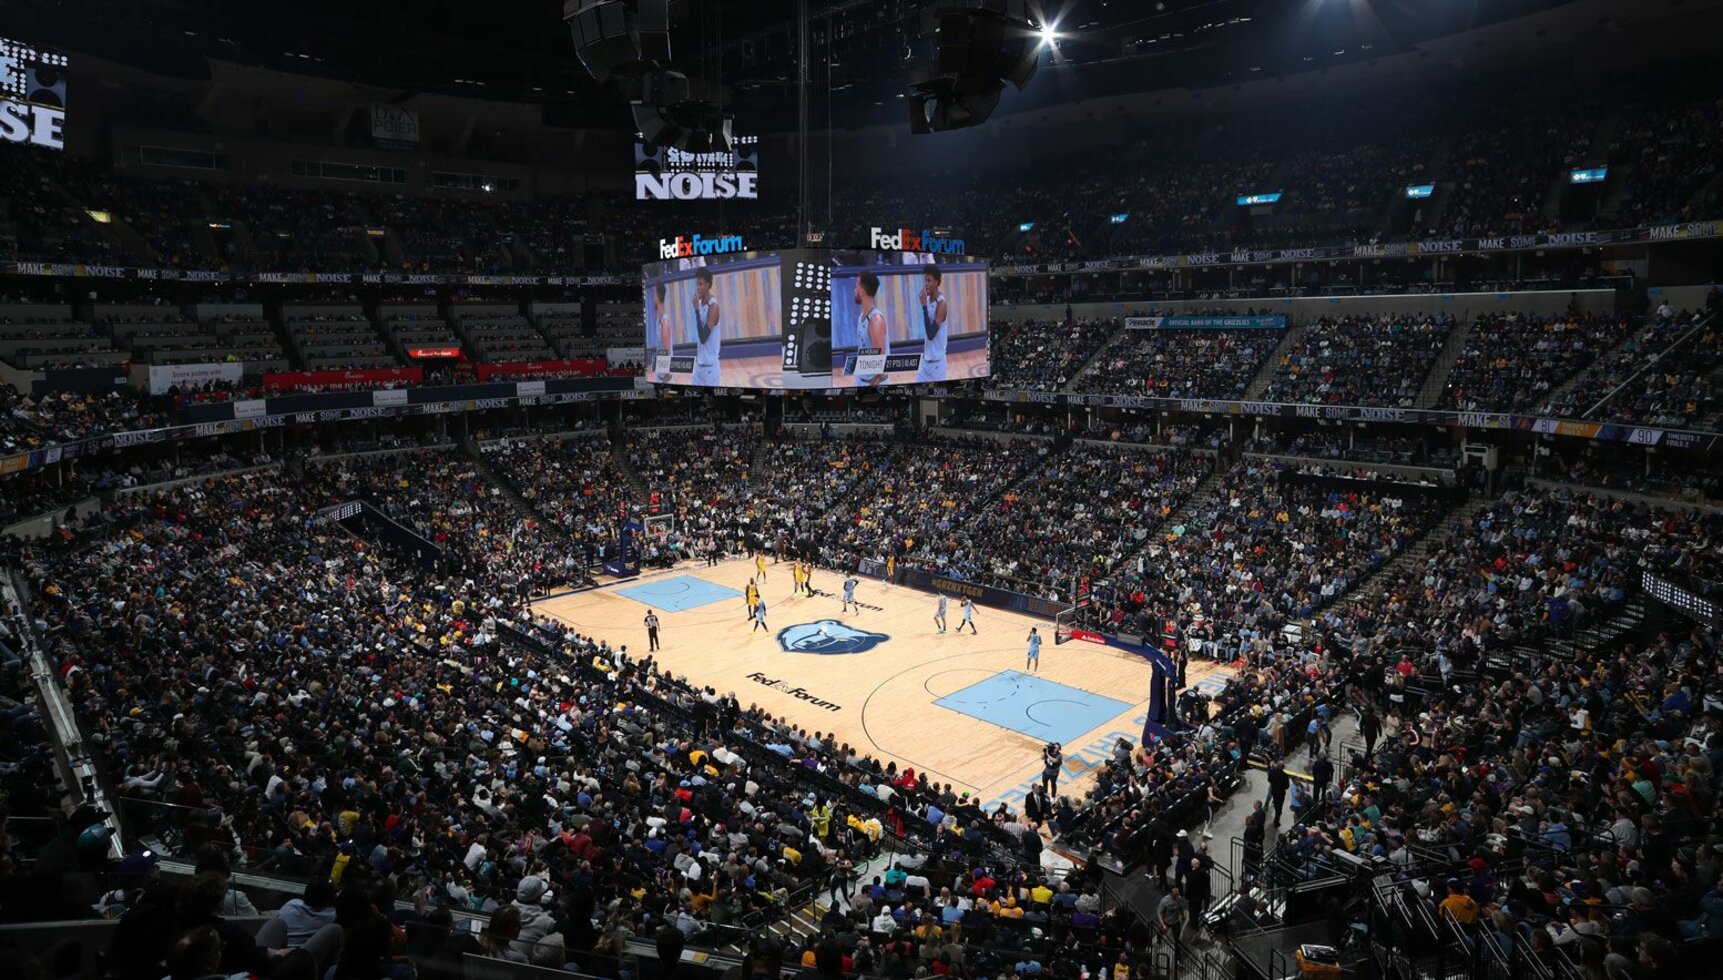 NBA Basketball Arenas - Memphis Grizzlies Home Arena - FedExForum